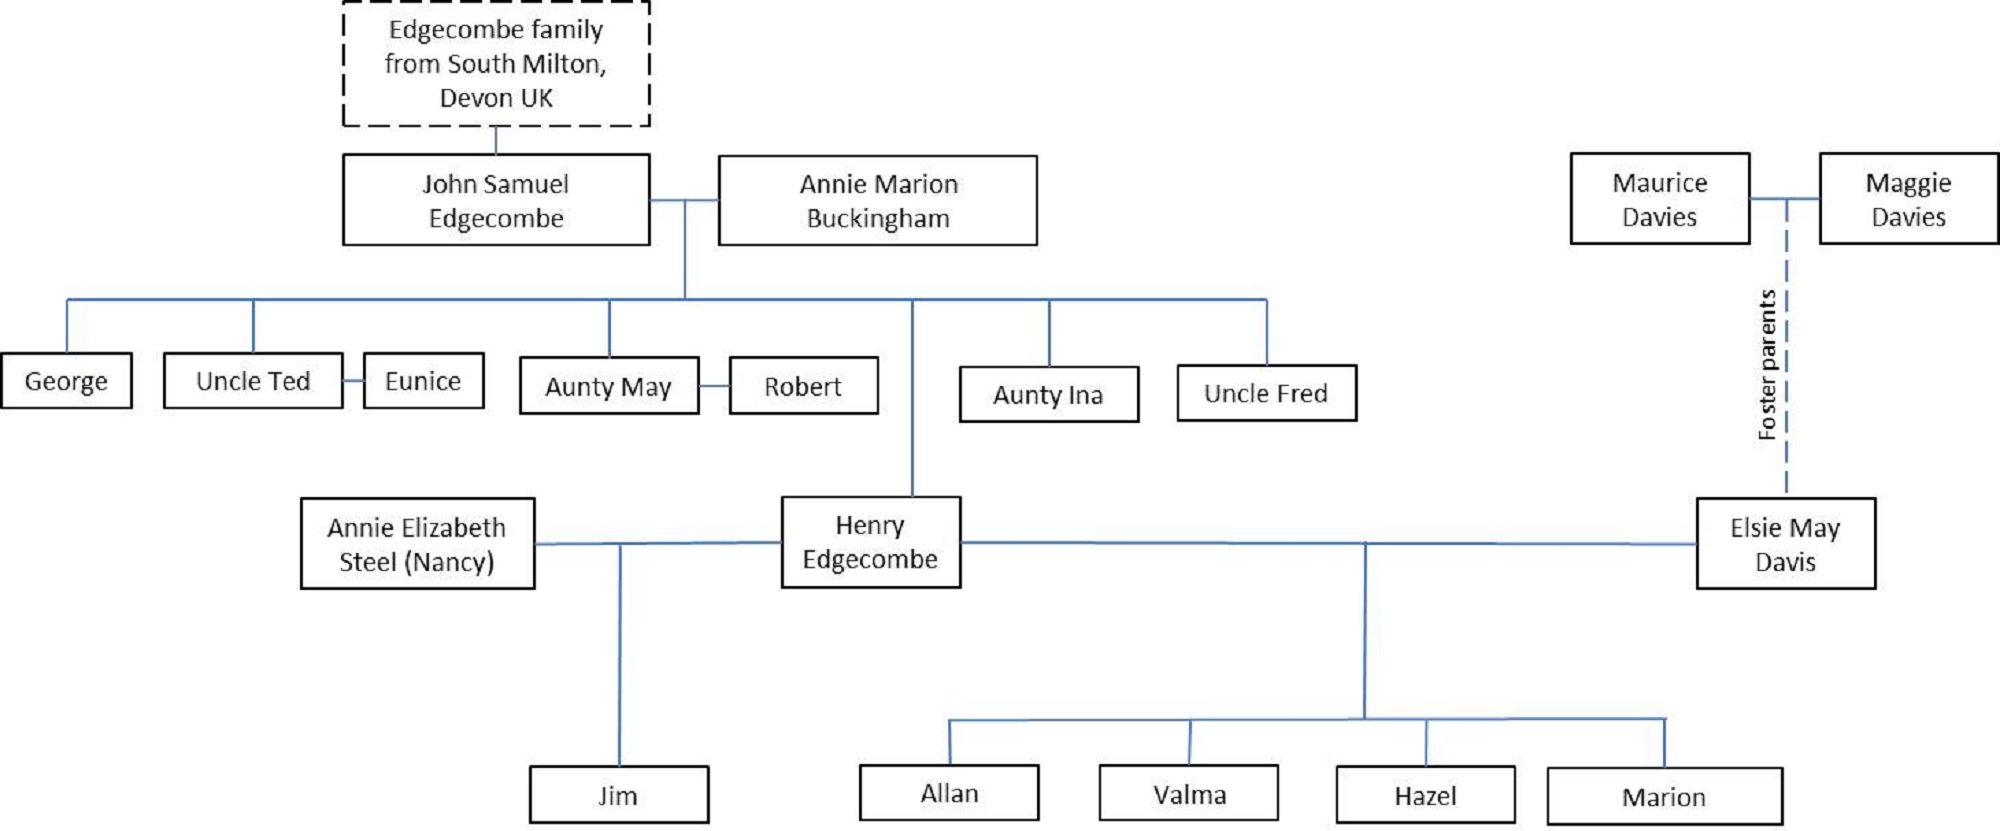 Edgecombe family tree